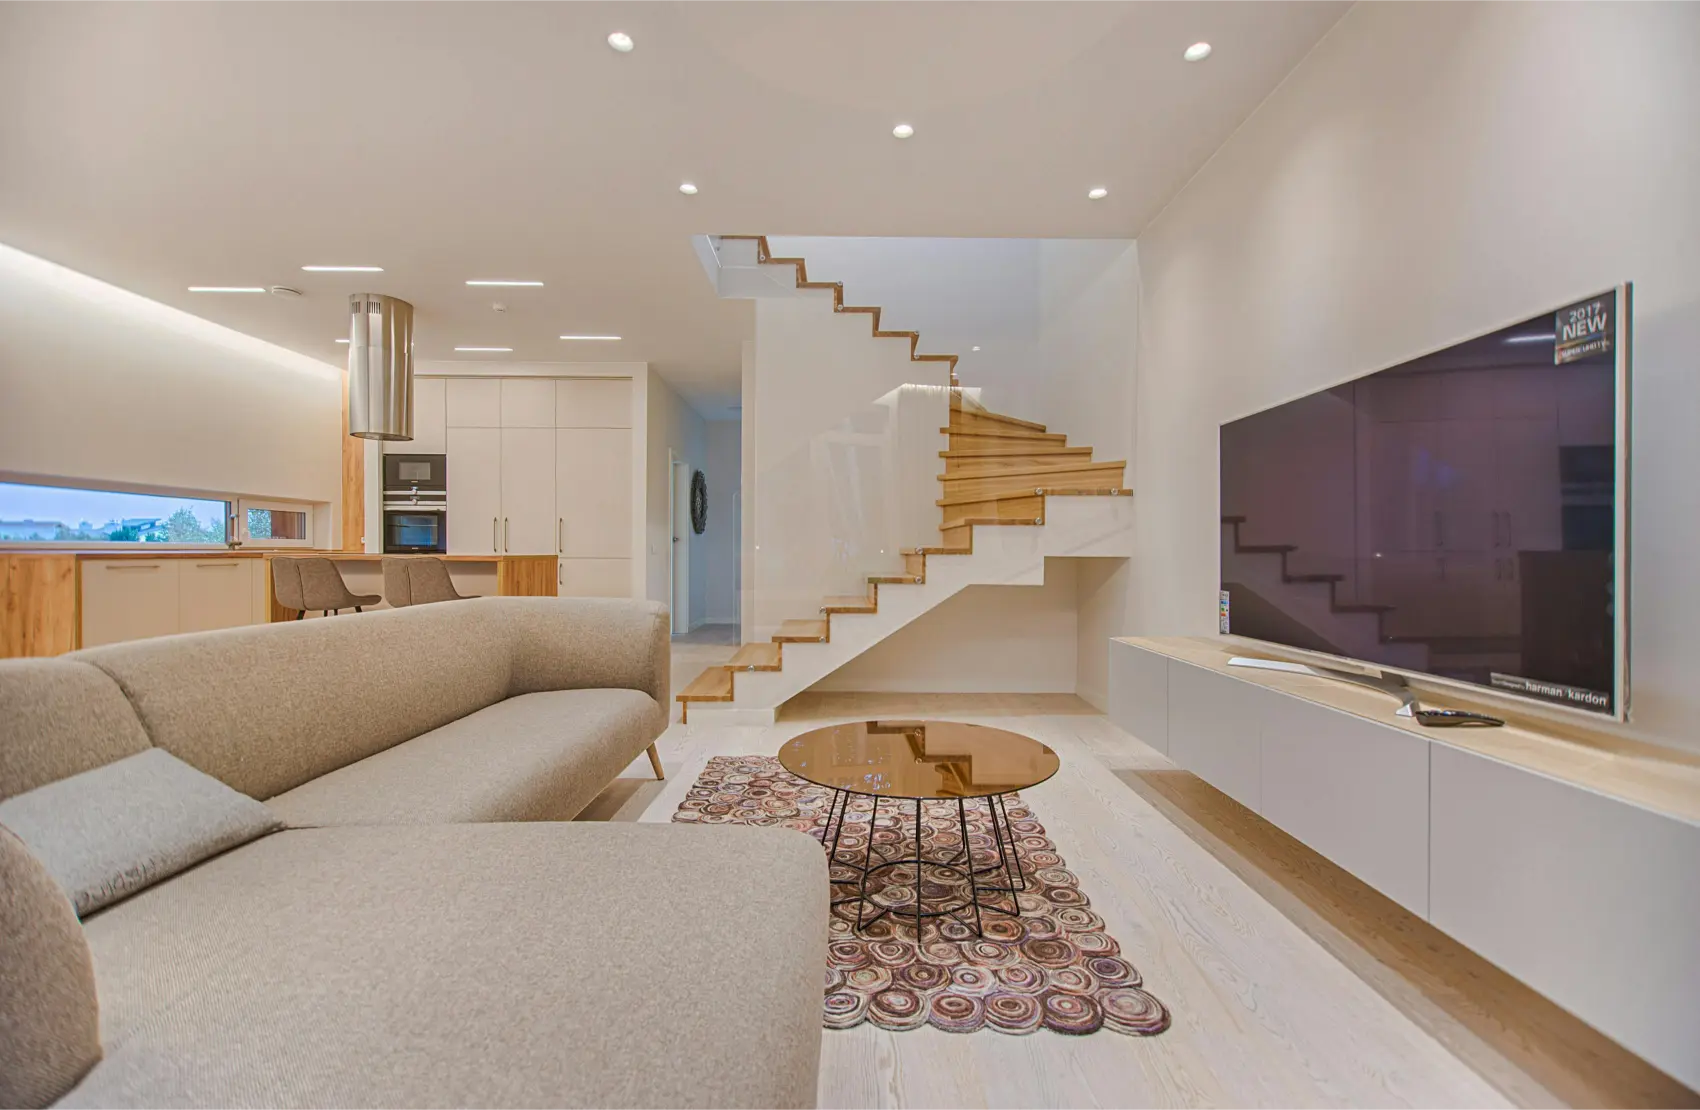 Australian Home Design